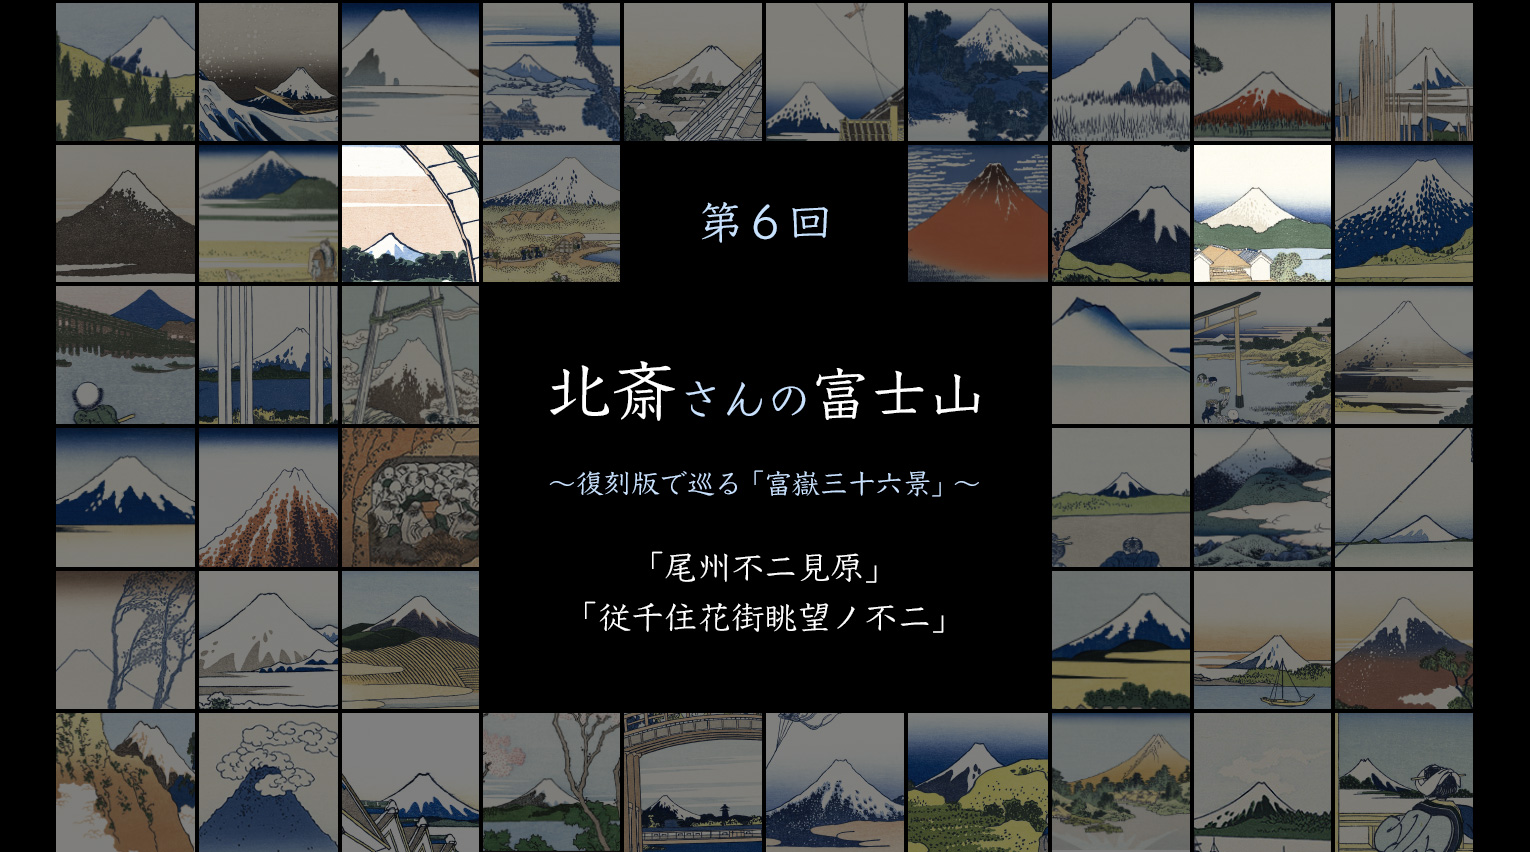 北斎さんの富士山 〜復刻版で巡る「富嶽三十六景」〜 (6)【PR】